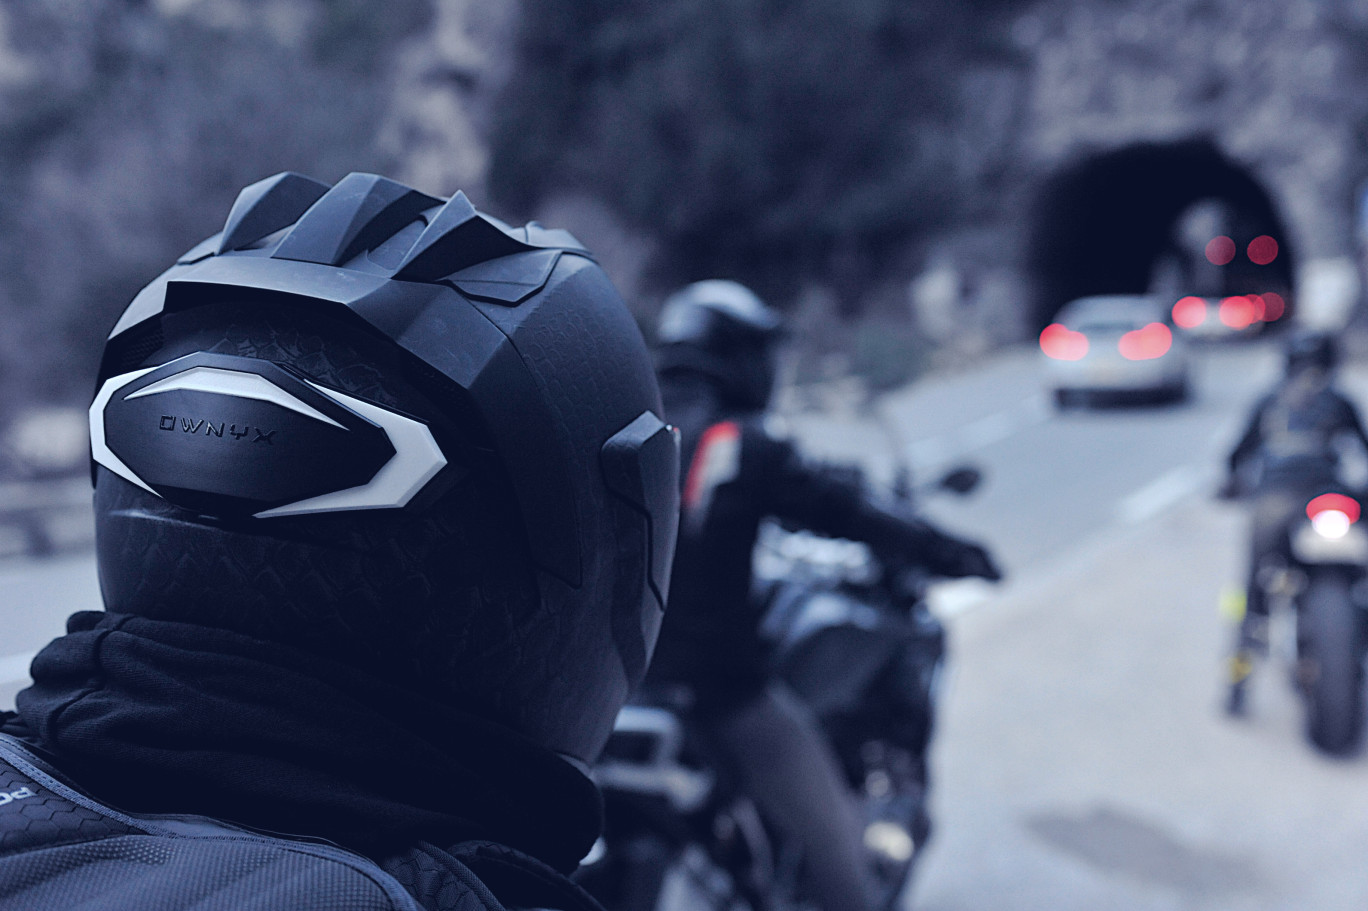 En 2019, 3 500 accidents de moto étaient directement liés au manque de visibilité sur la route. ( ©Ownyx)